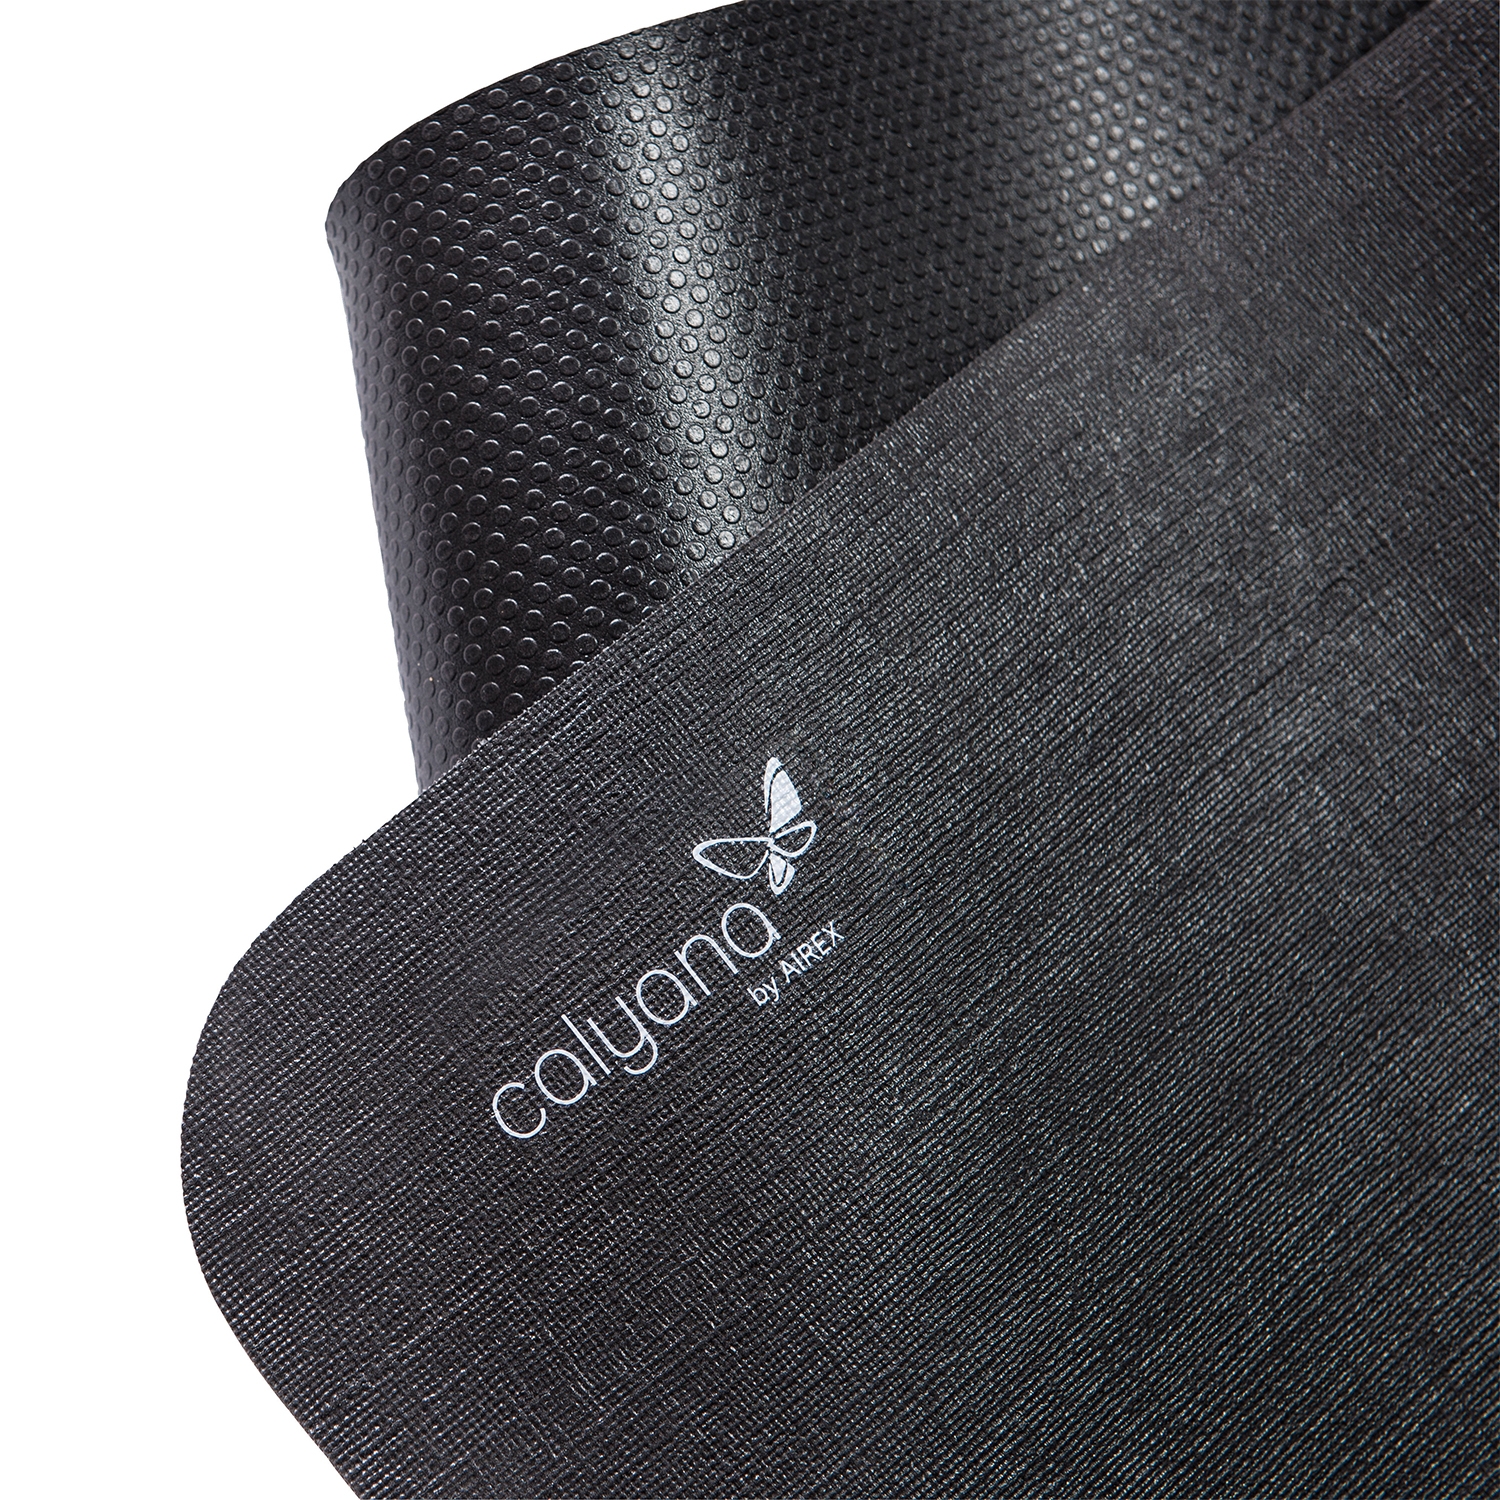 Airex tapis Calyana Professional Yoga - 185 x 66 x 0,68 cm - gris foncé